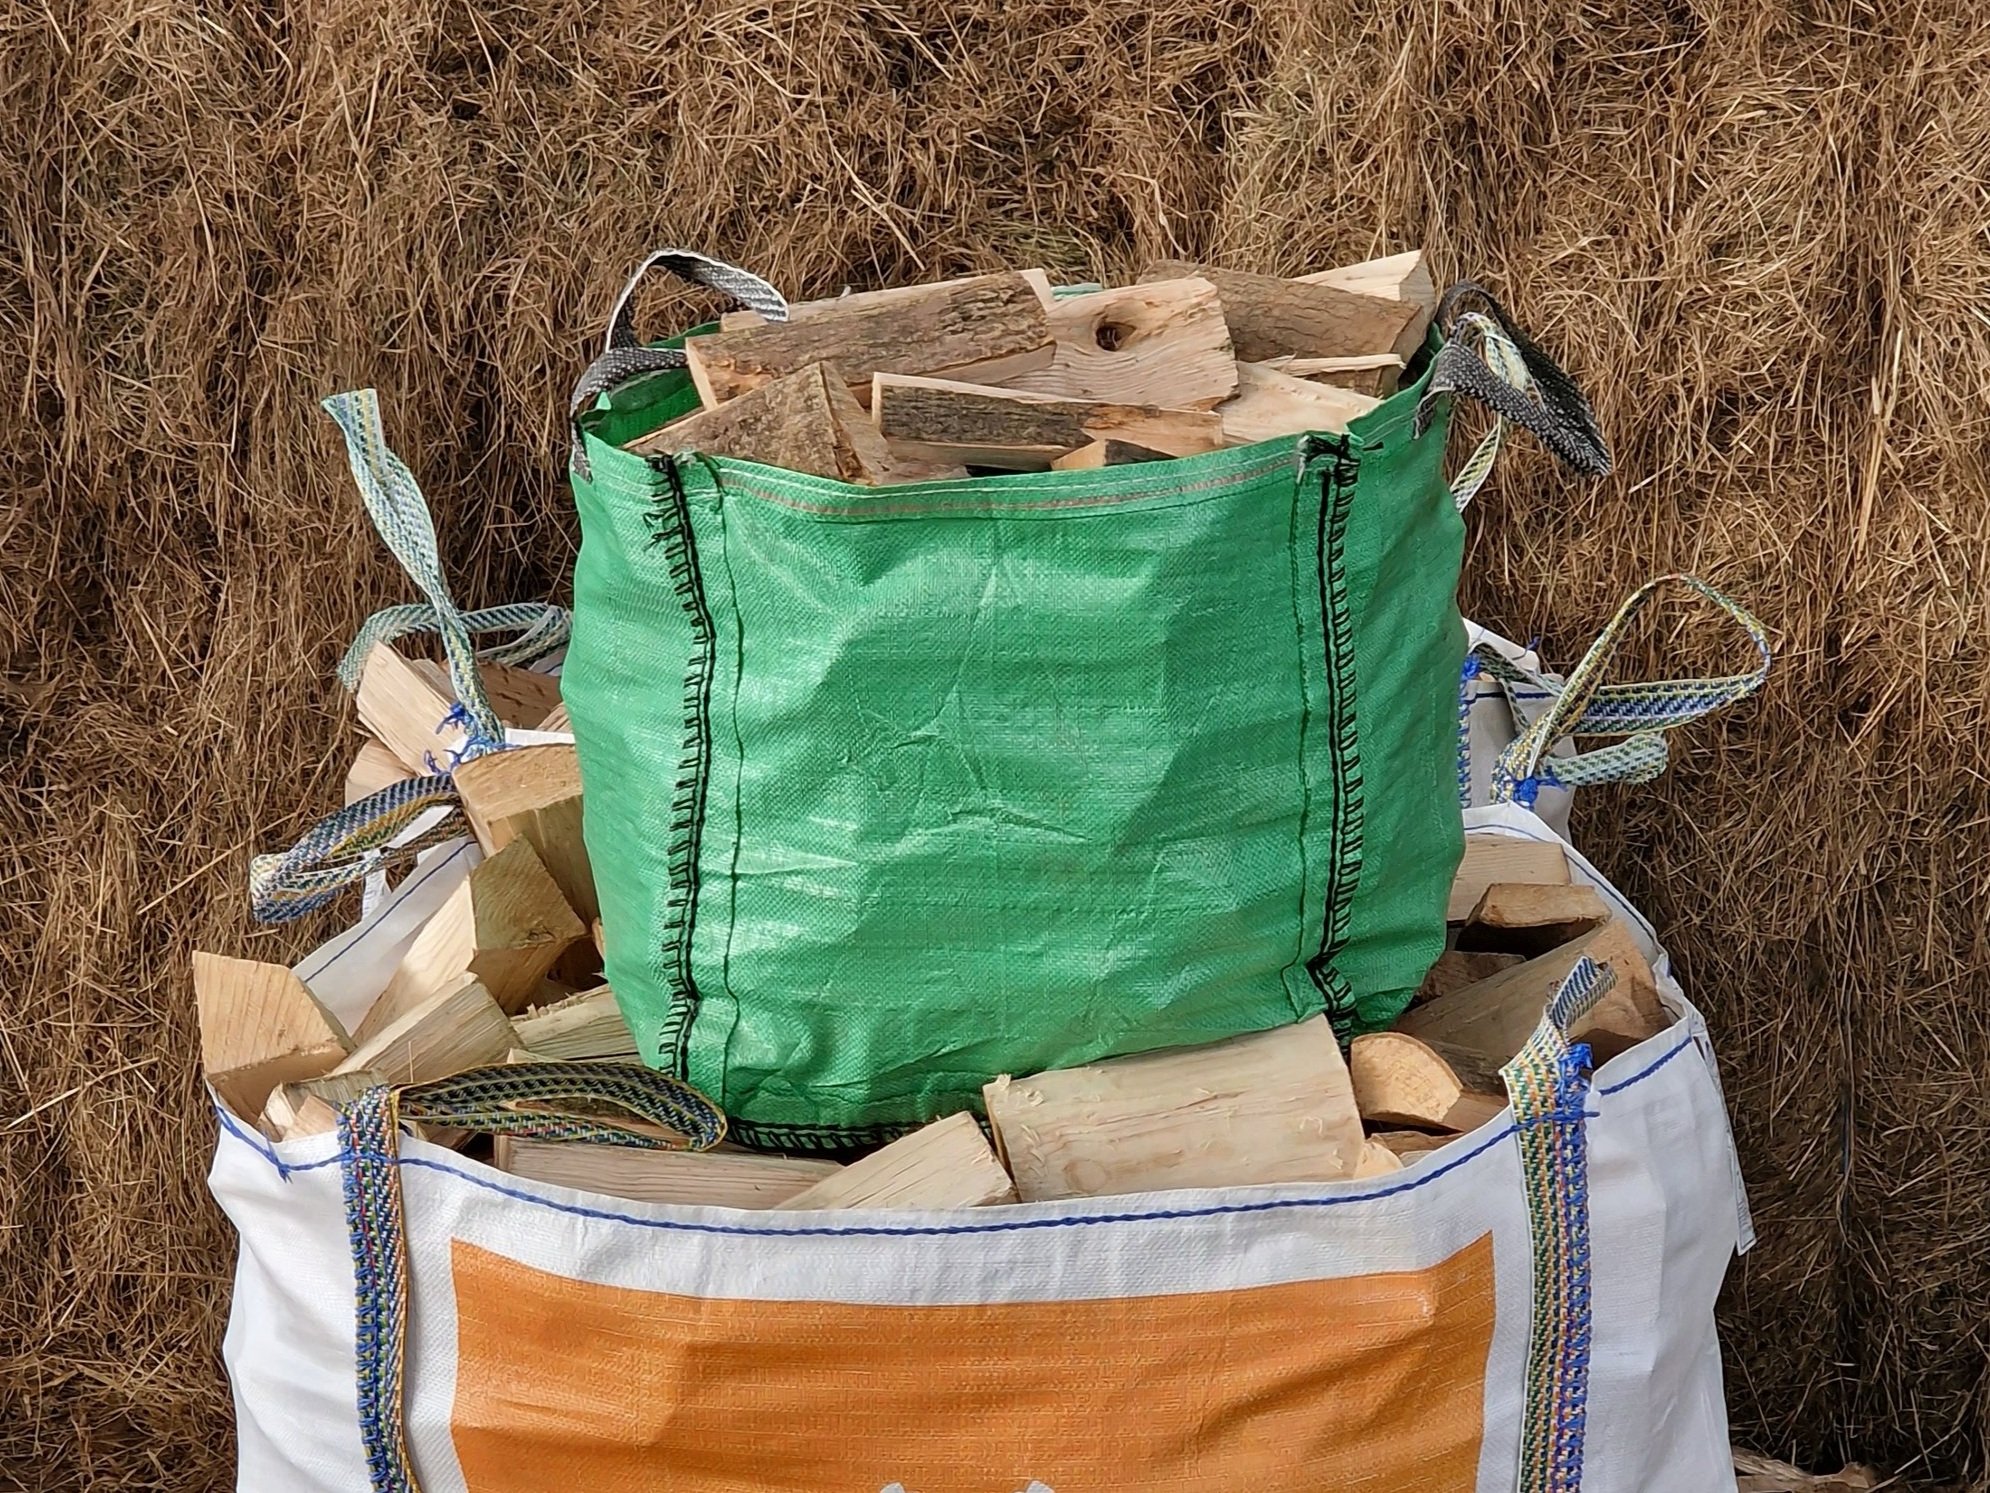 100kg Kiln Dried Hardwood Trolley Bag with bag of kindling - Rathwood